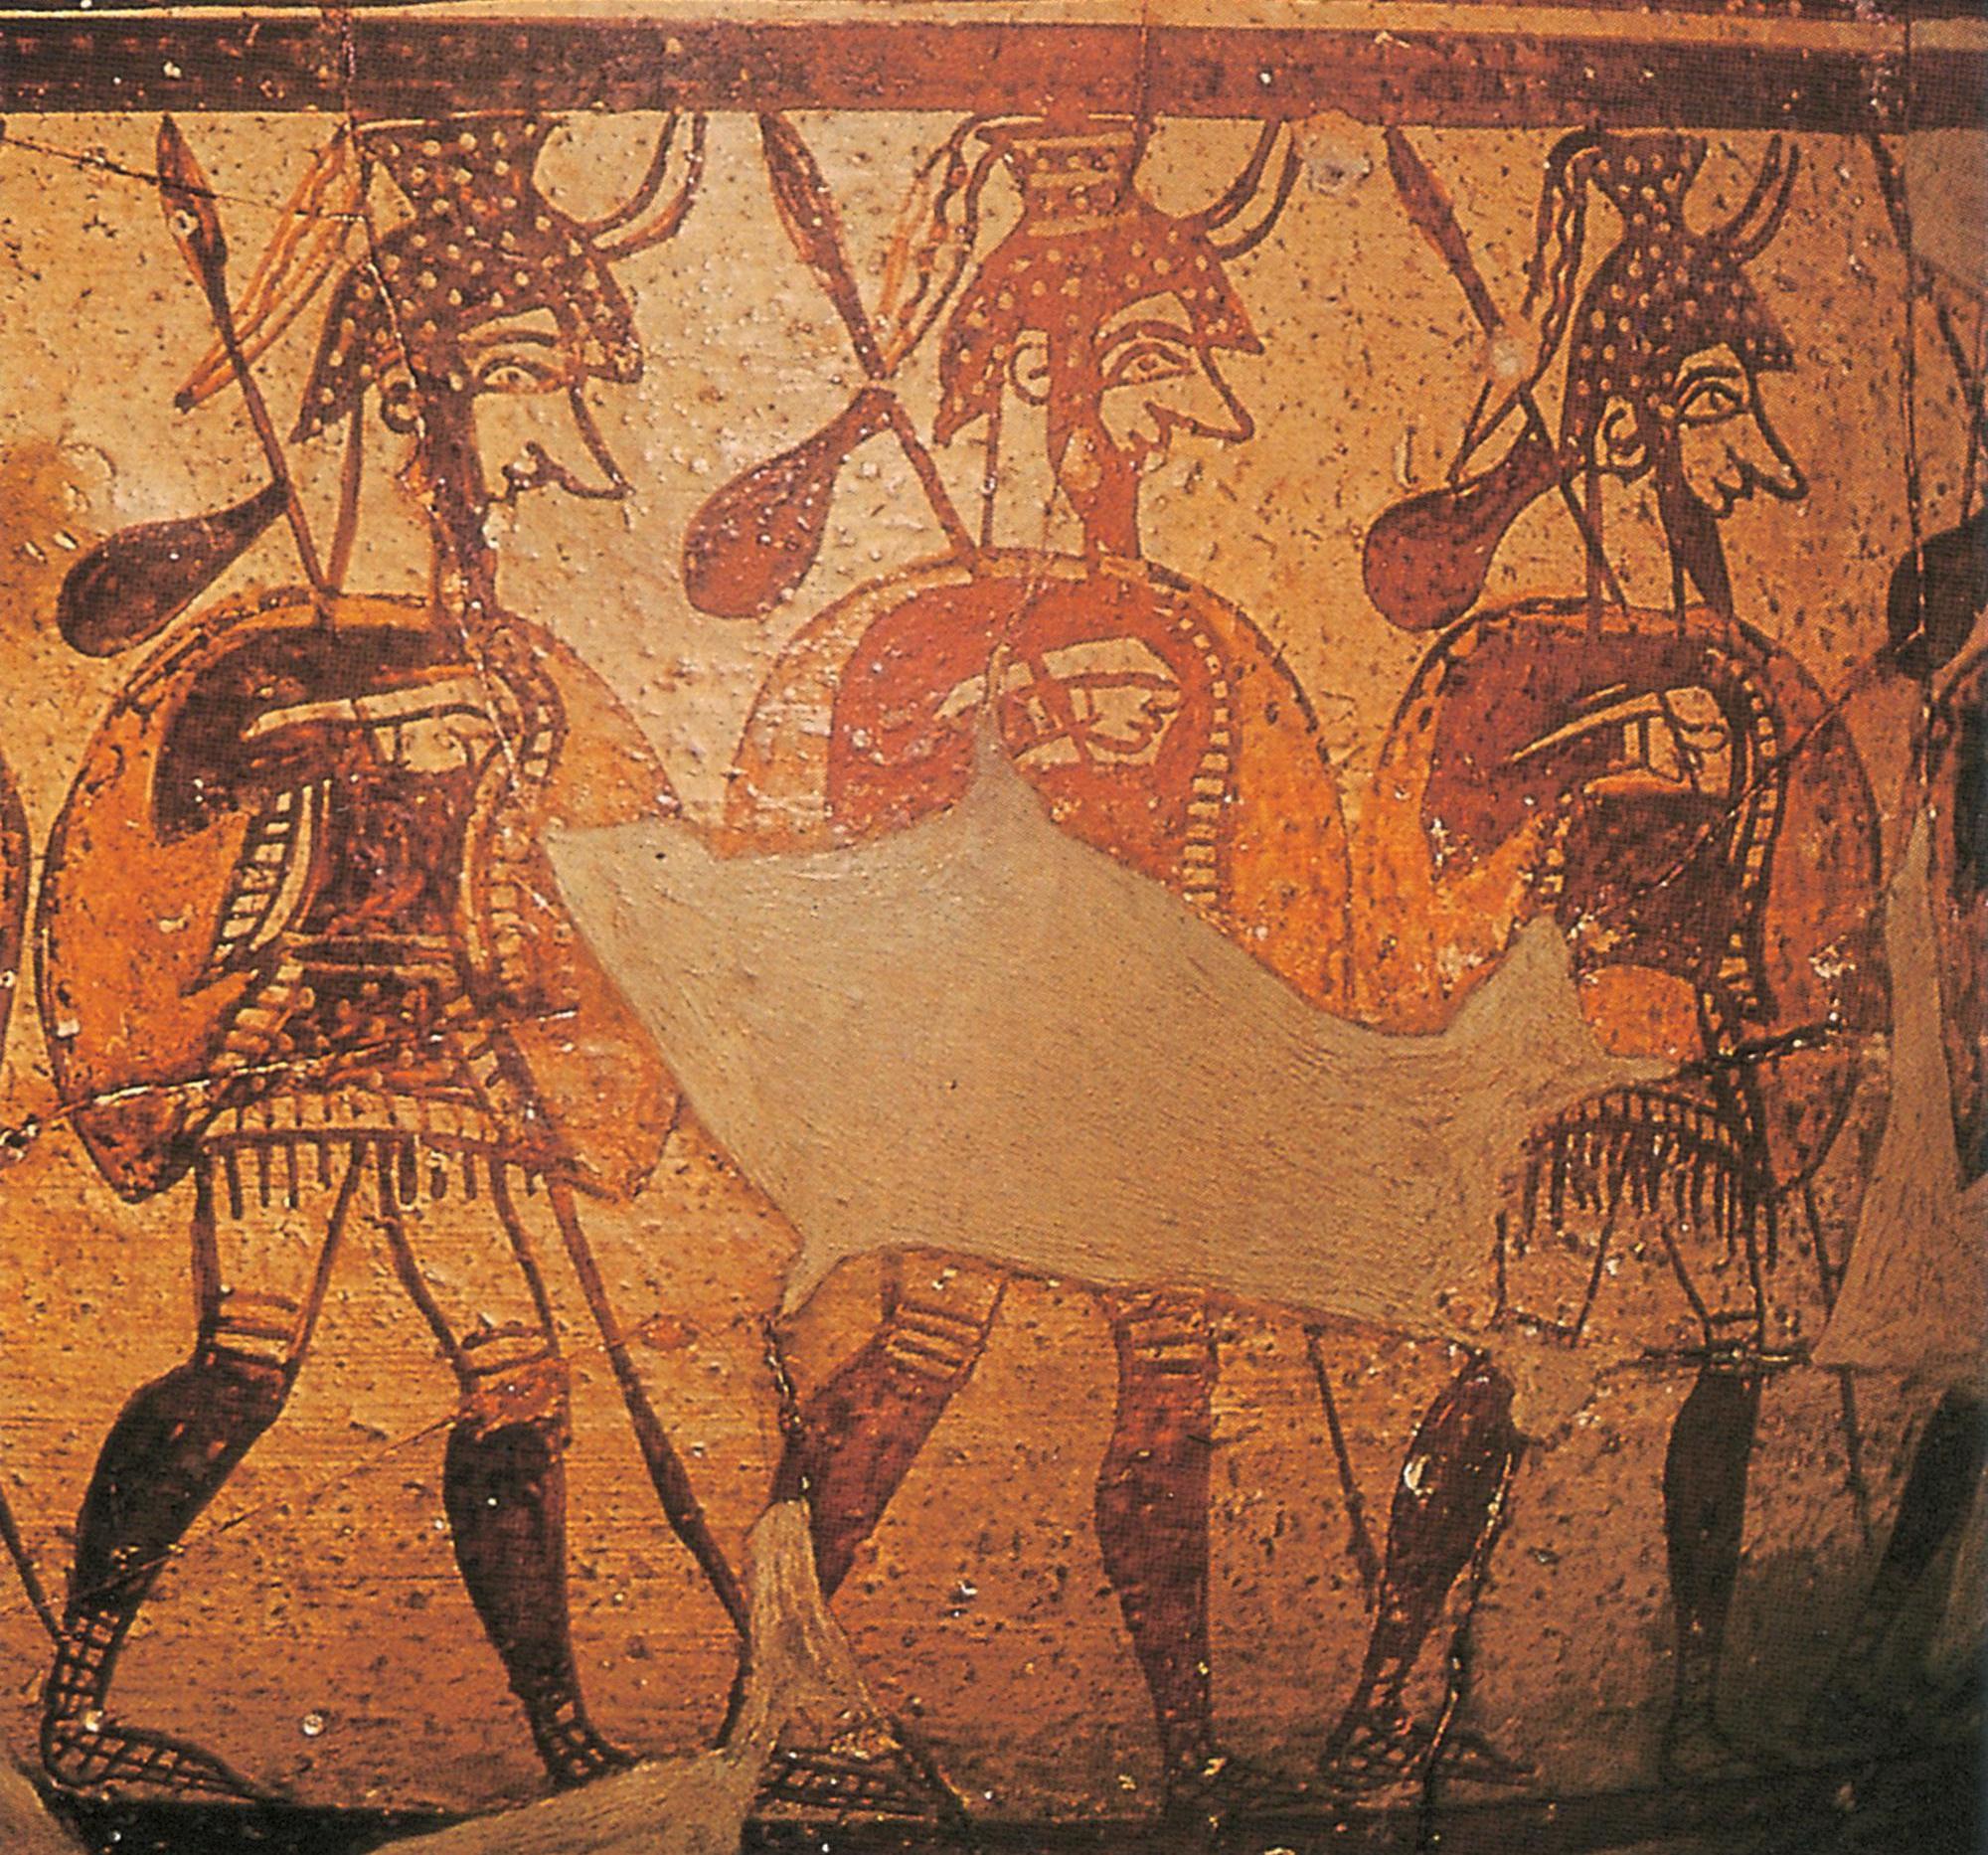 迈锡尼花瓶图案:手持长矛的古希腊武士